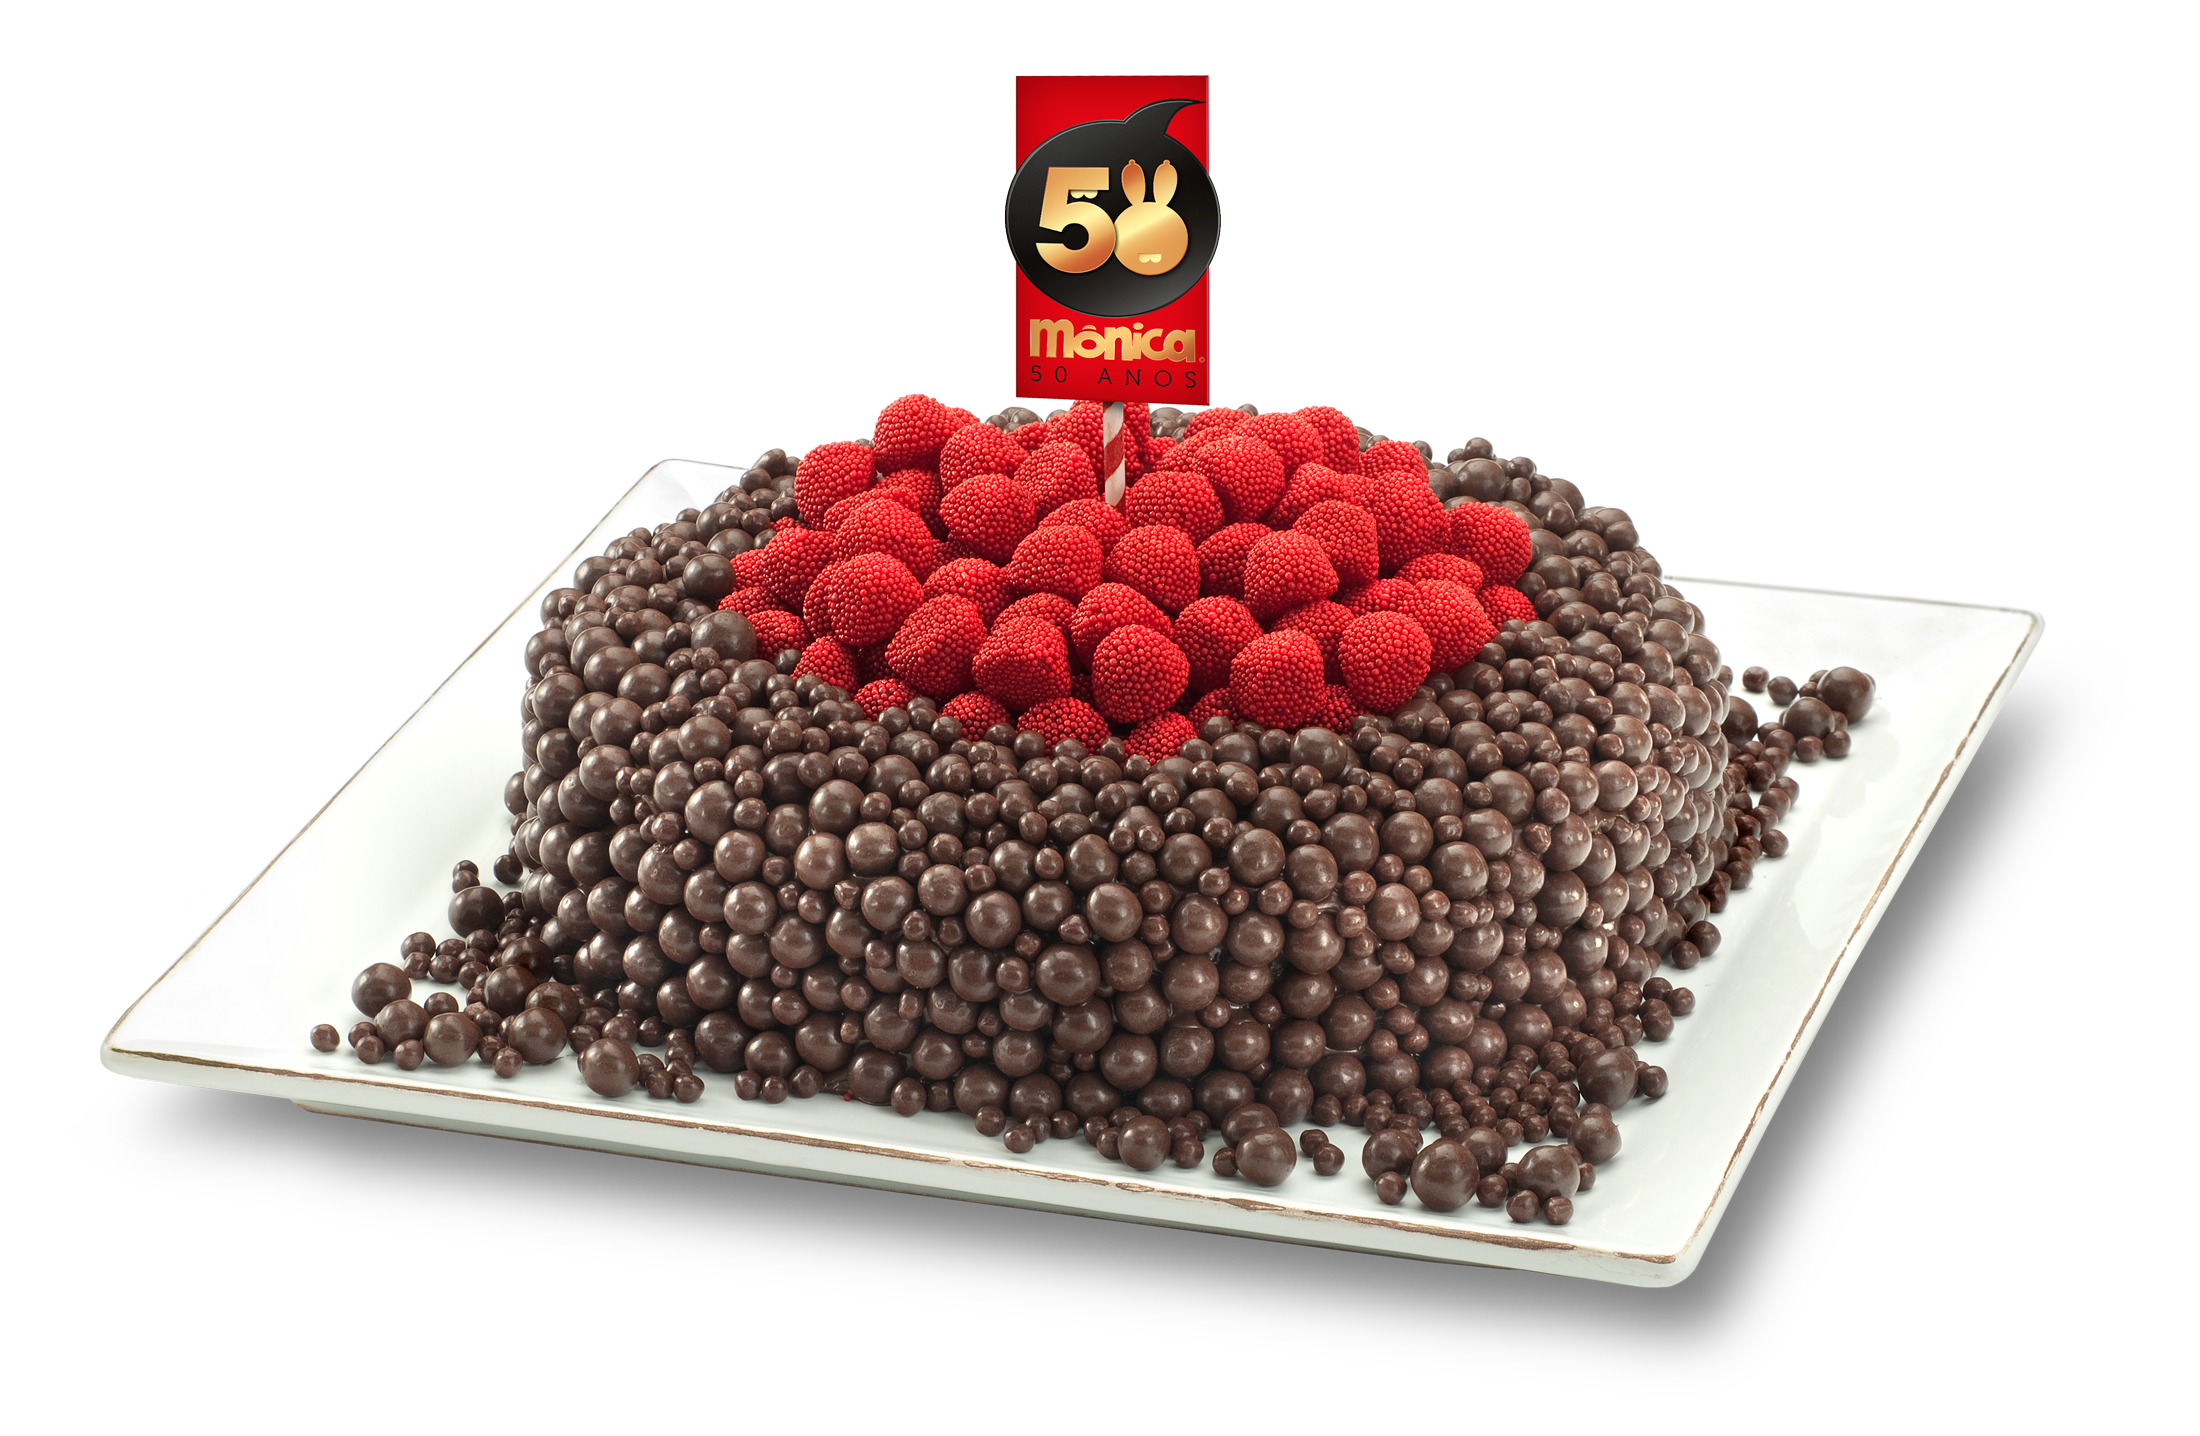 Restaurantes: Mônica ganha bolo especial em seu aniversário de 50 anos